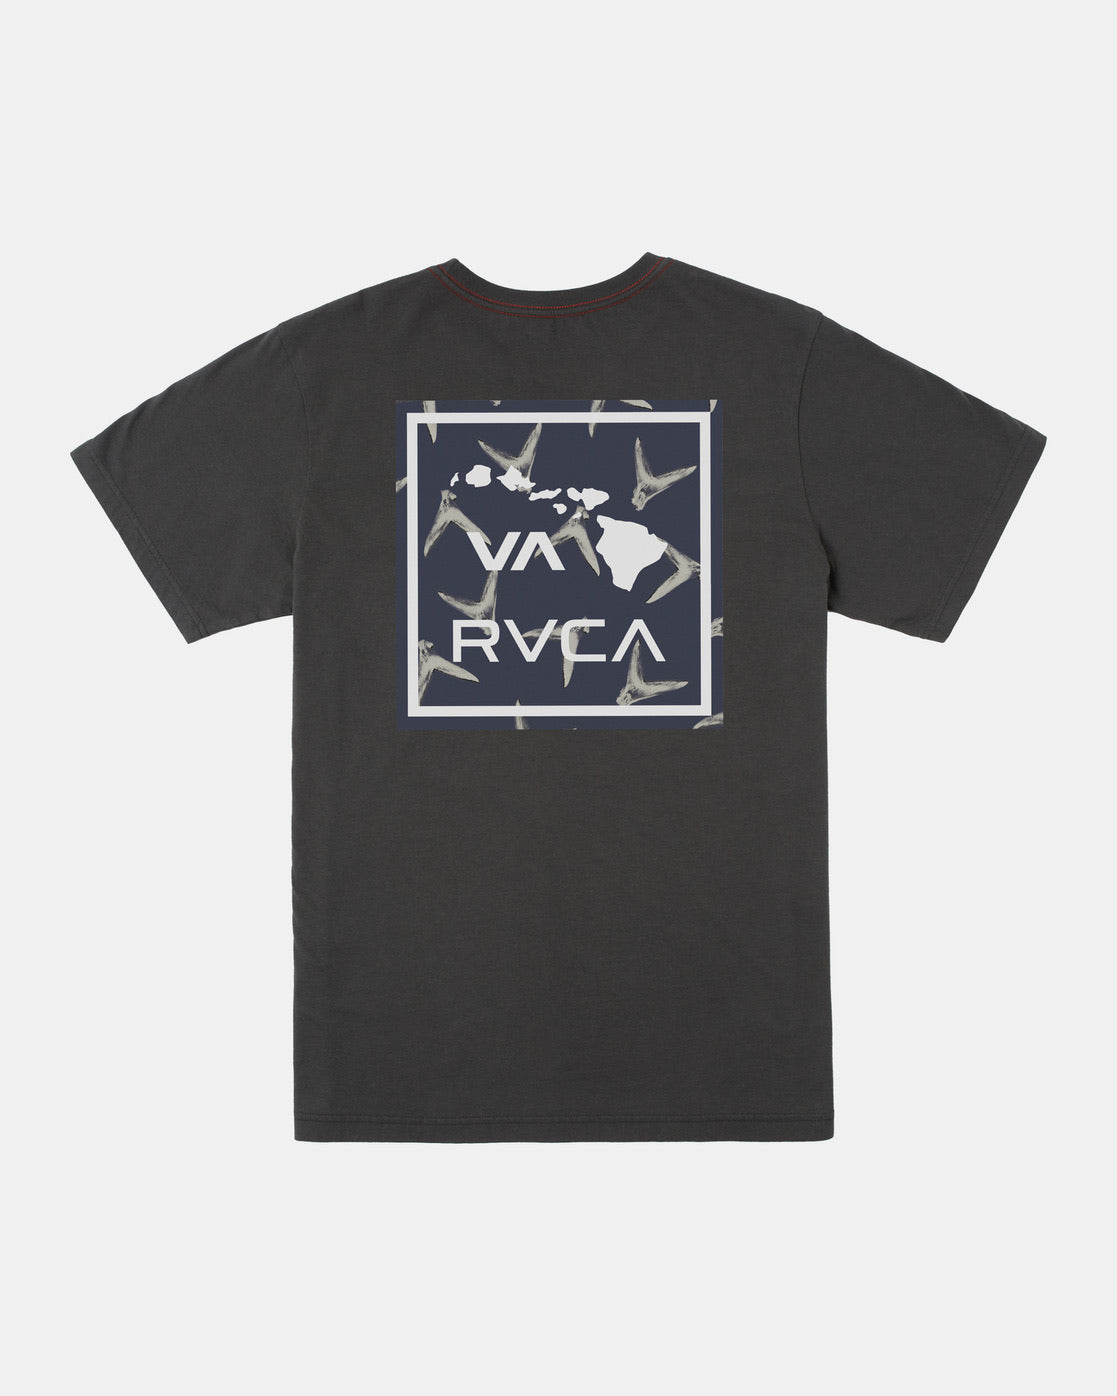 RVCA - VA FINS (AVBZT00399) - PTK